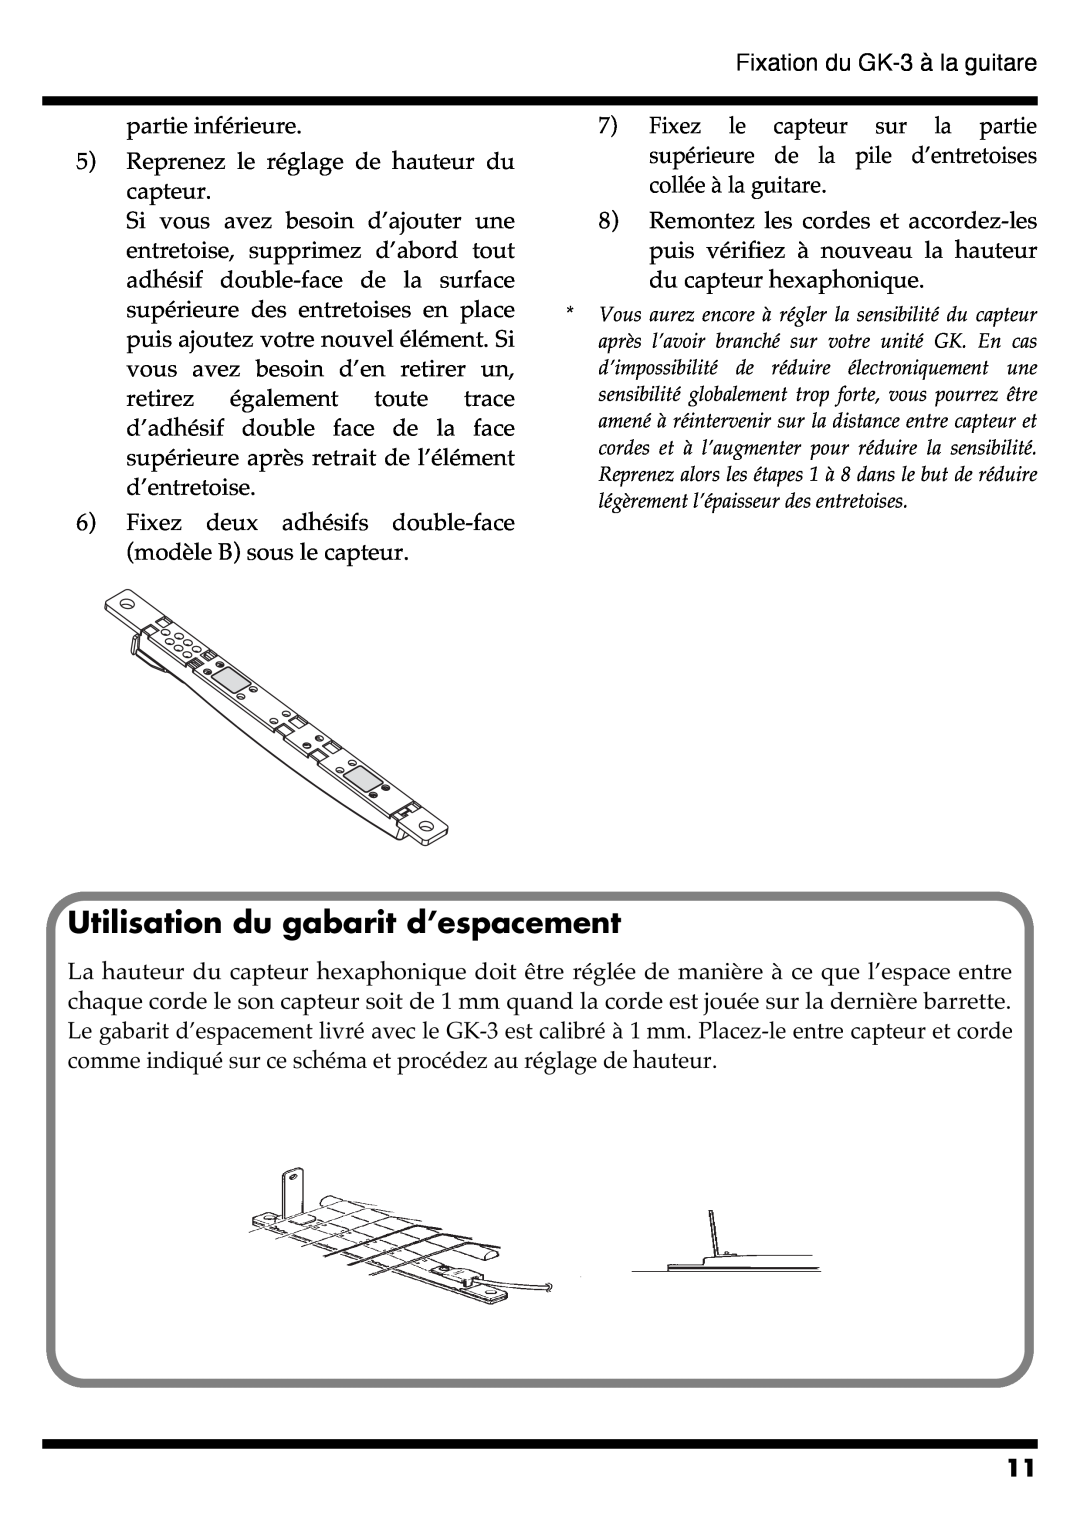 Roland GR-20 manual Utilisation du gabarit d’espacement 